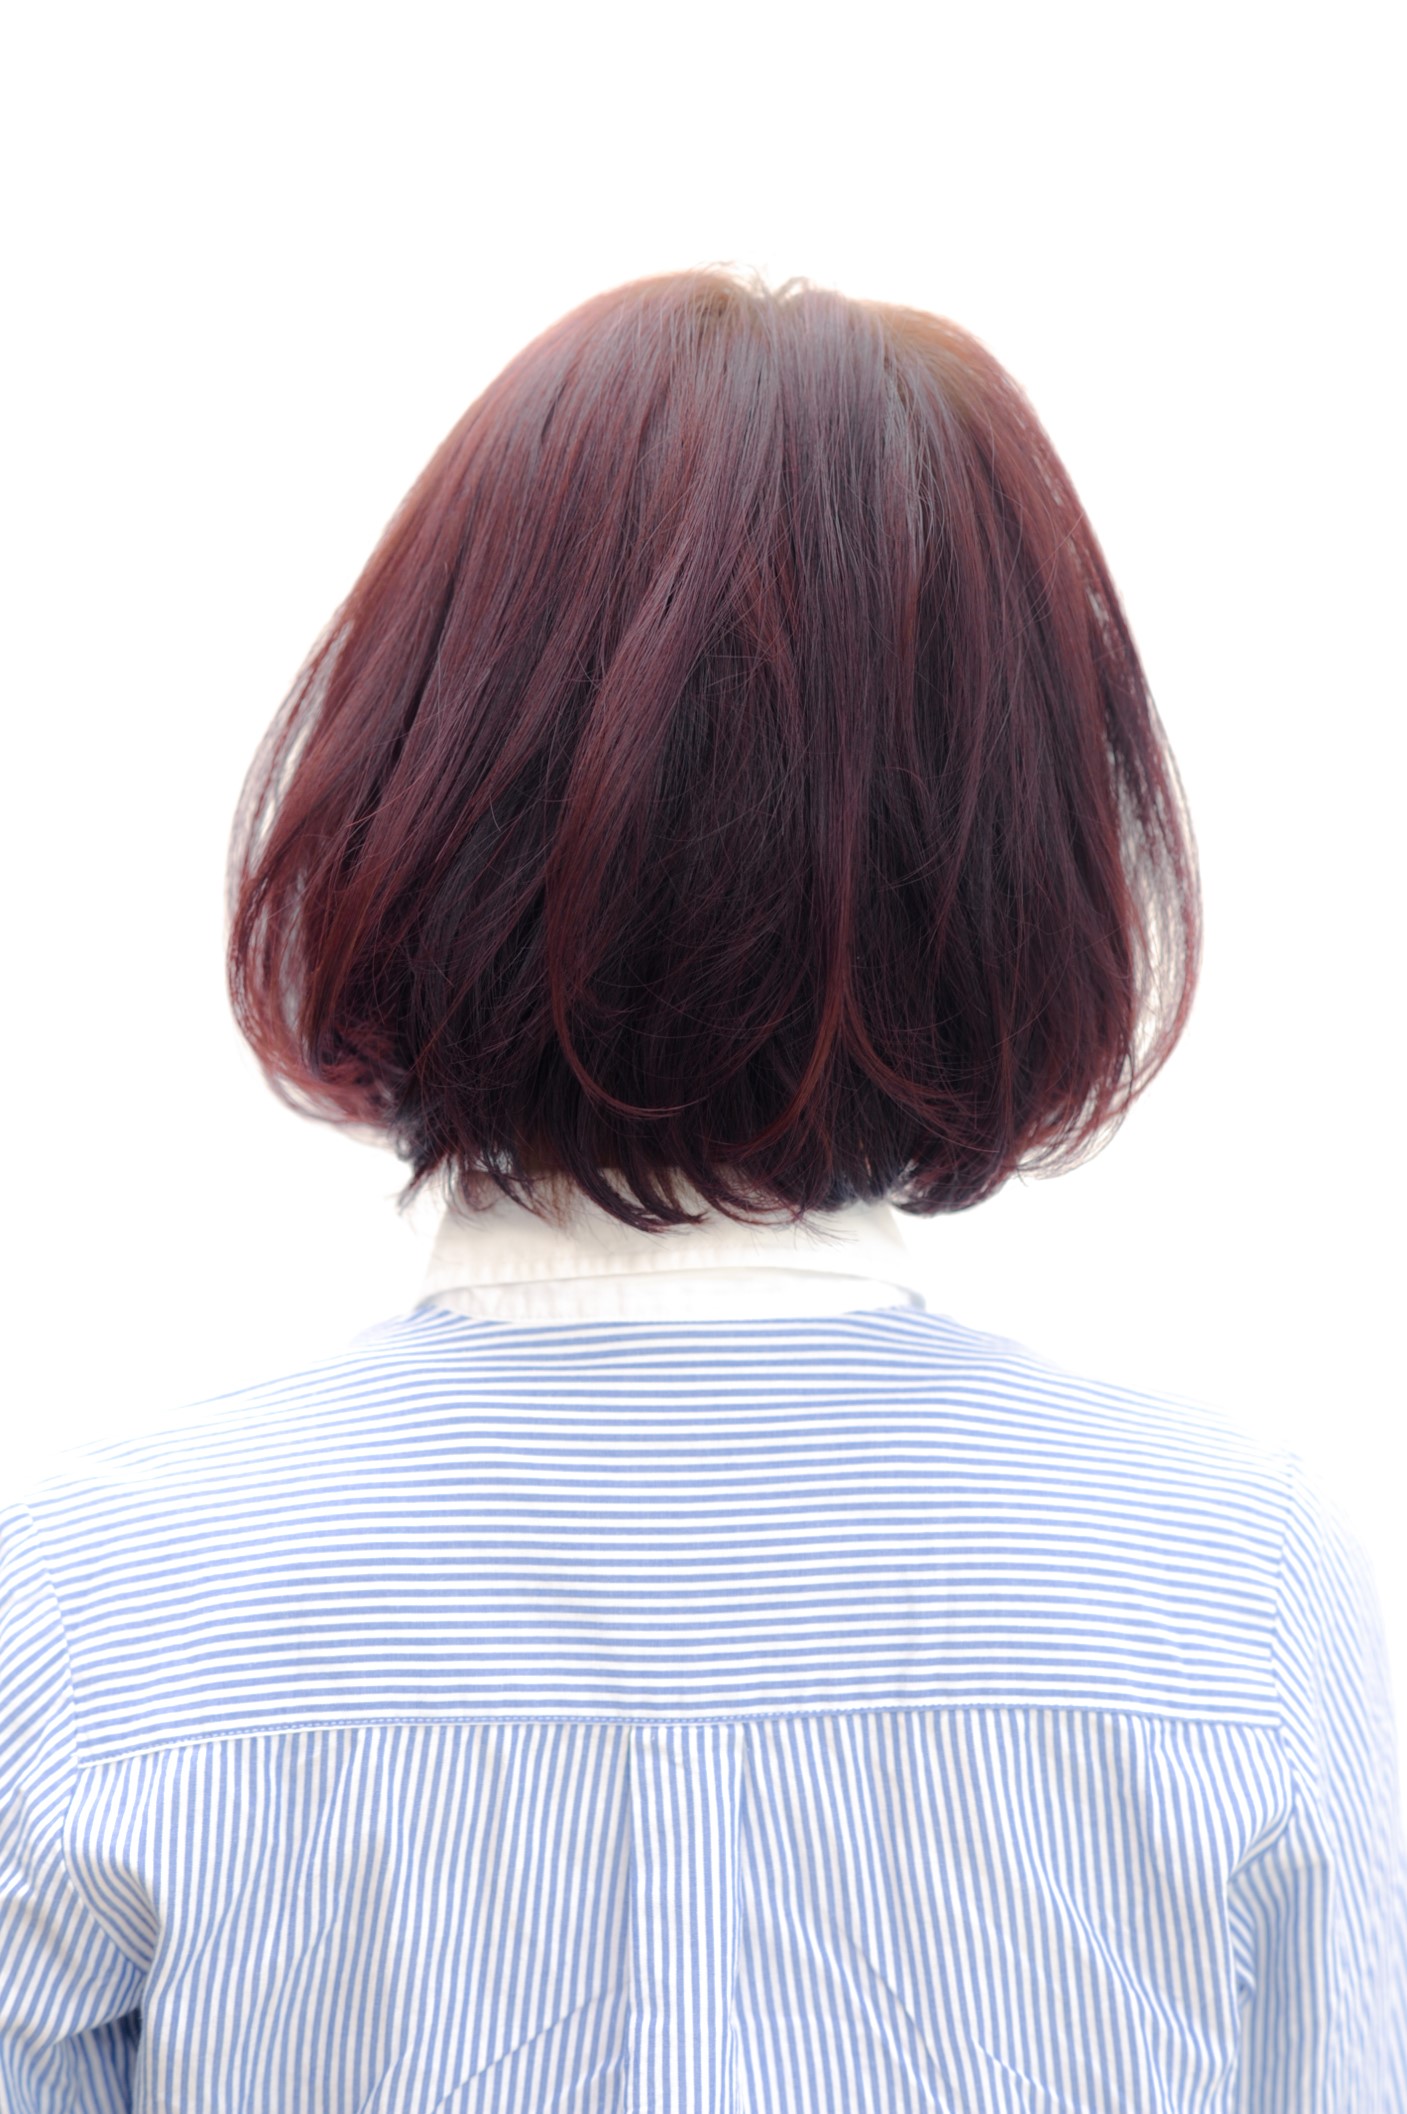 人気ショートヘア 前下がりボブ 2015 Lanai ラナイ のヘアスタイル ヘアログ